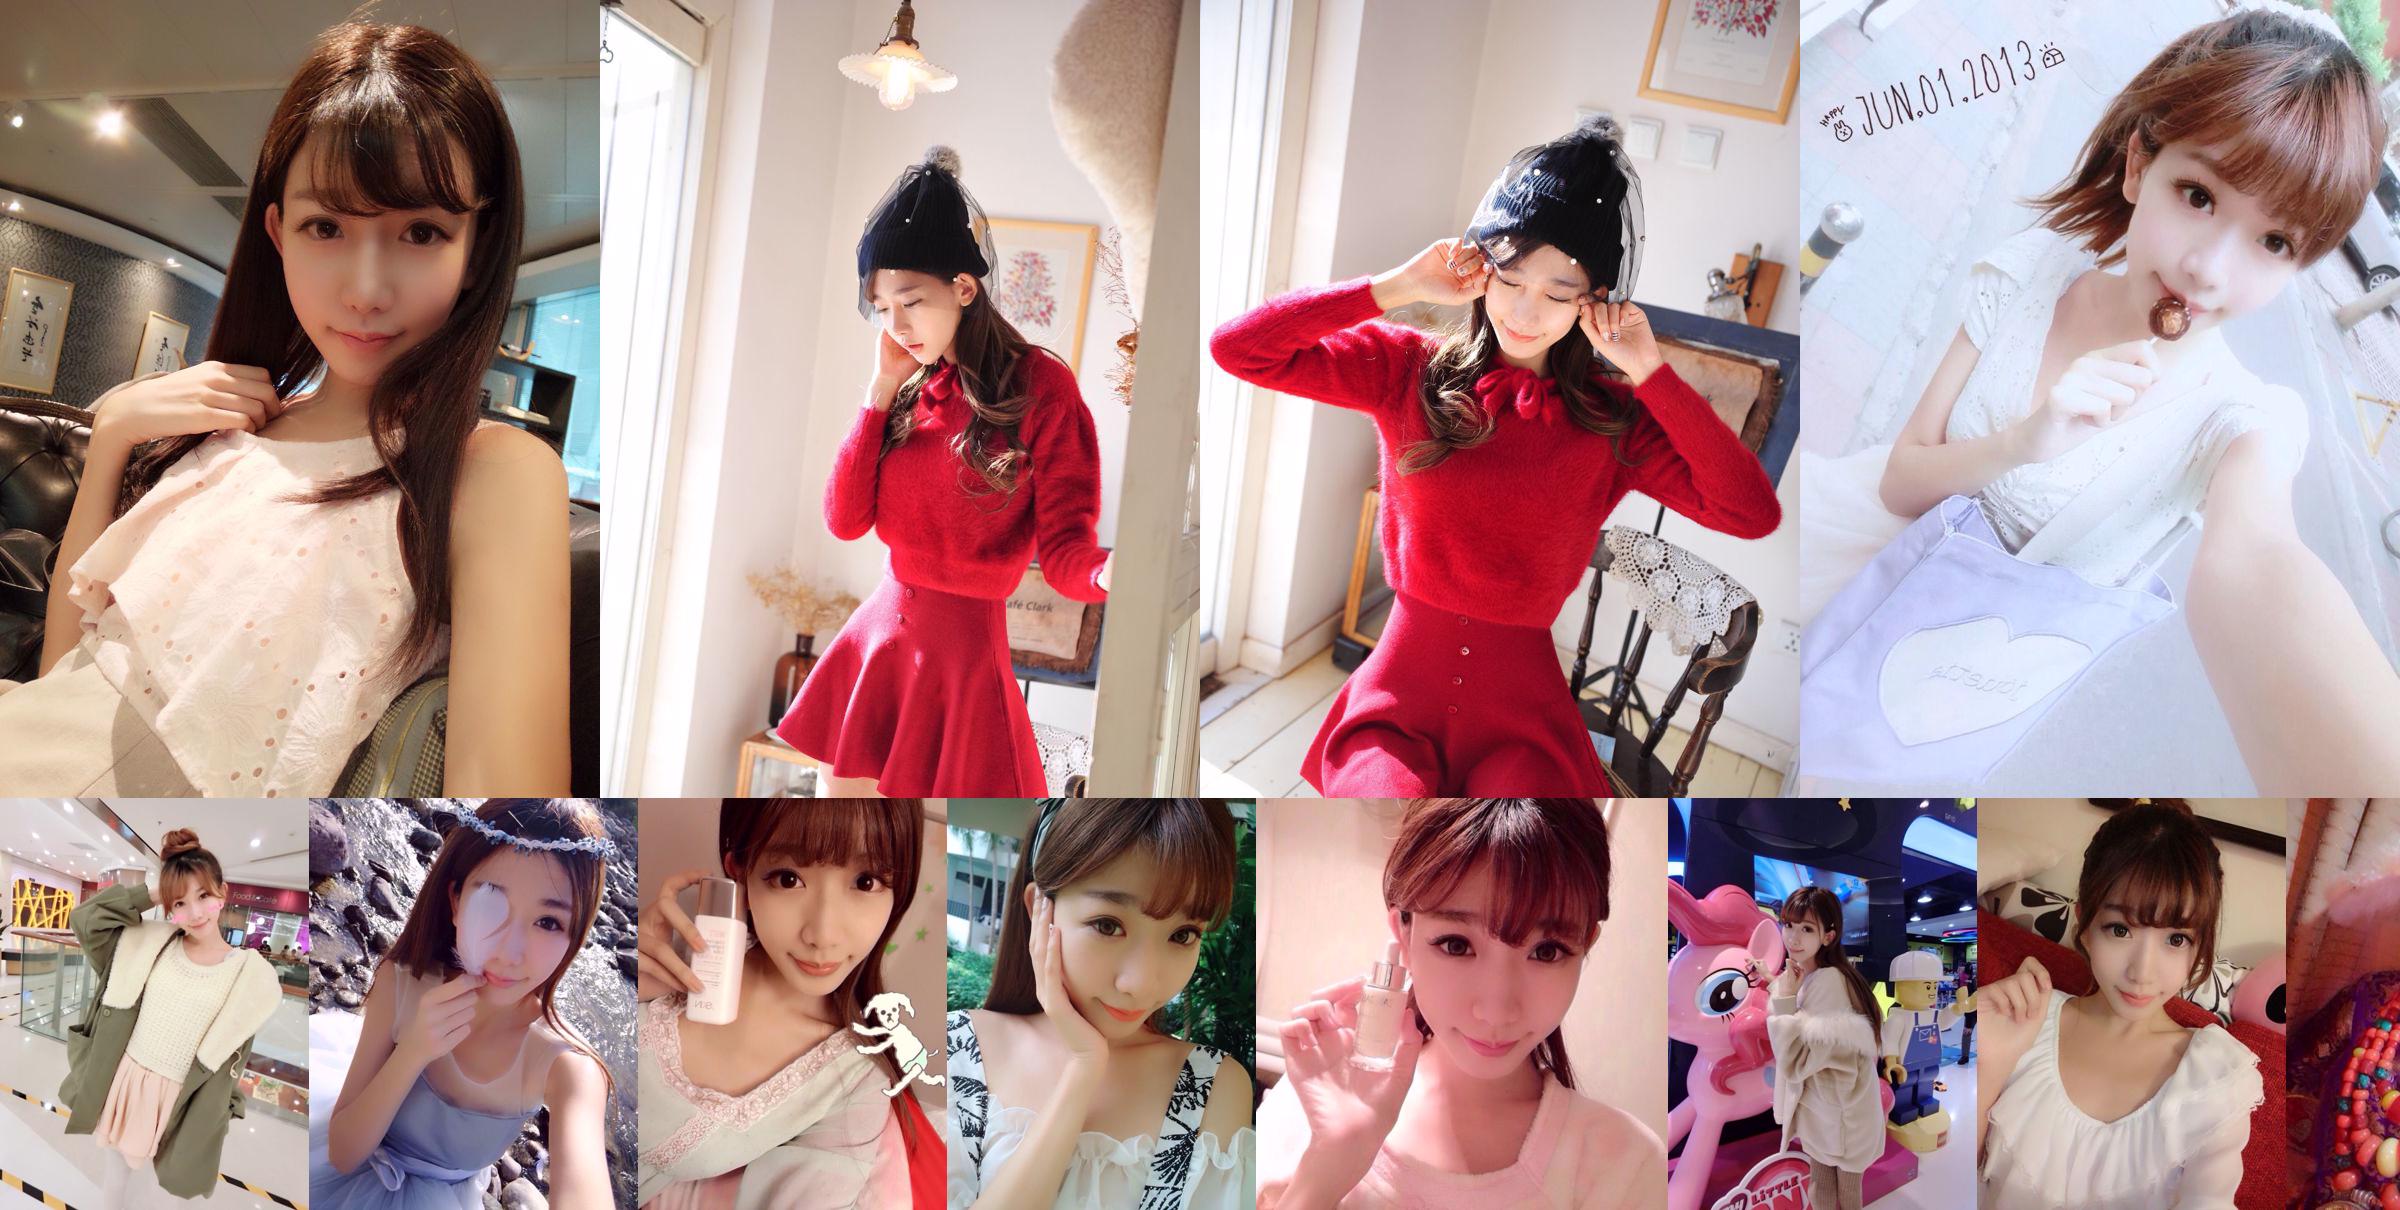 La famosa hermana taiwanesa de Internet Chen Xiao "Weibo Selfie Pictures" Part 1 Colección de fotos No.c08e4b Página 5